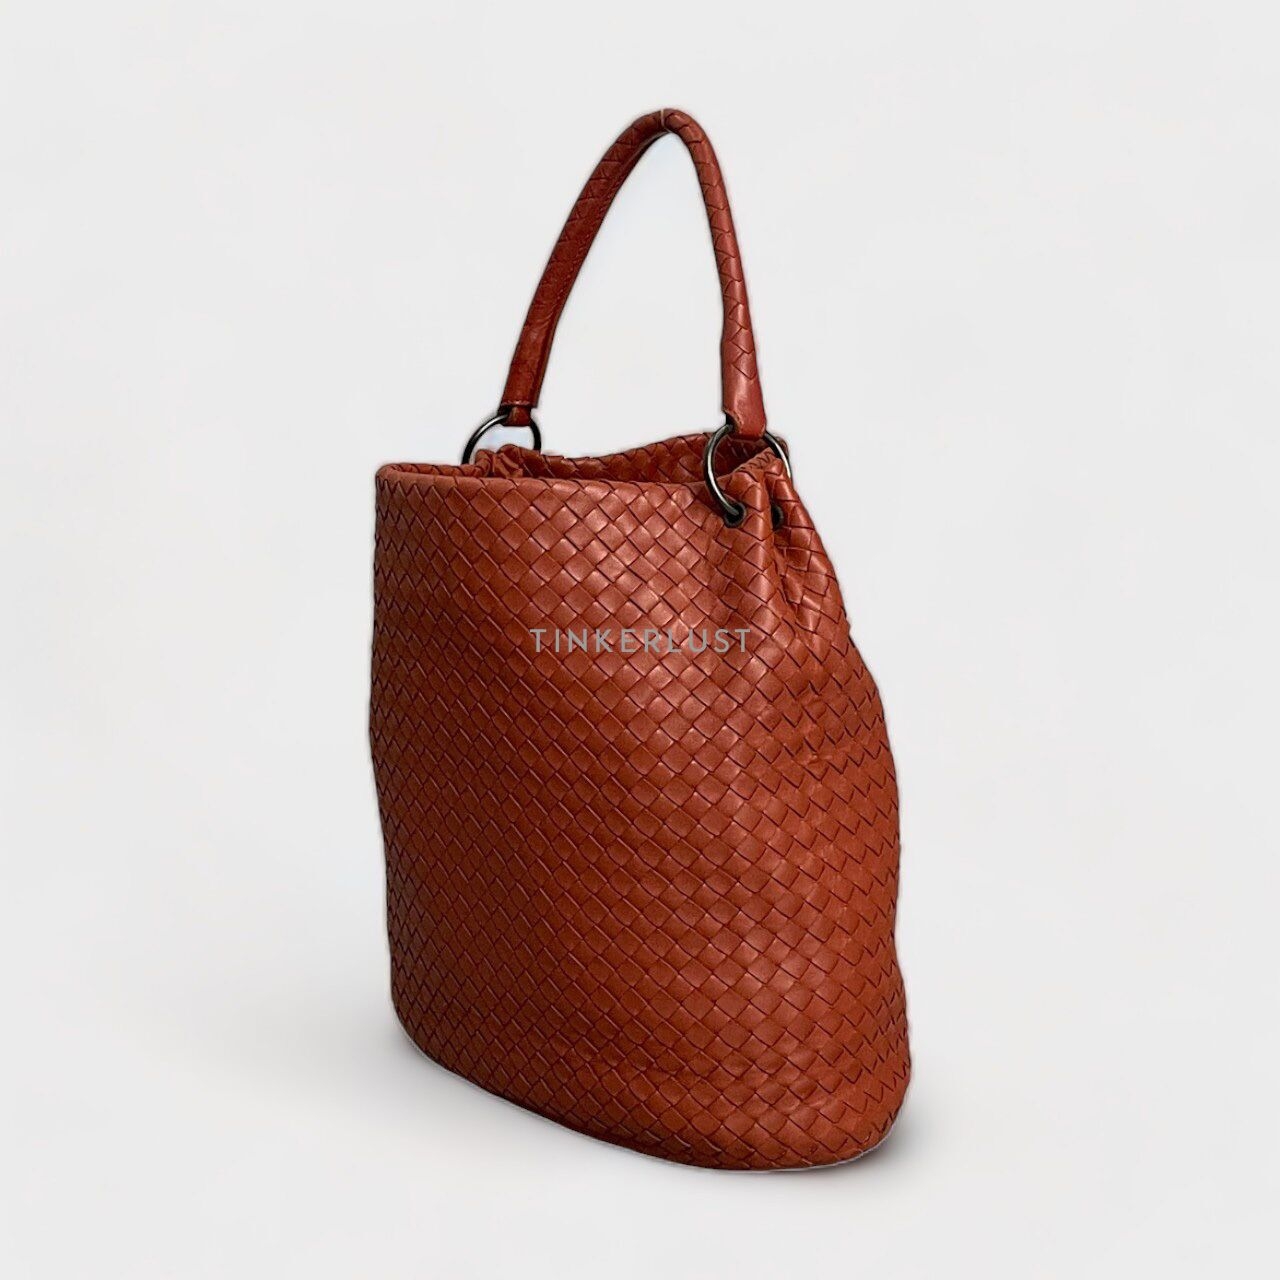 Bottega Veneta Brown & Red Tote Bag